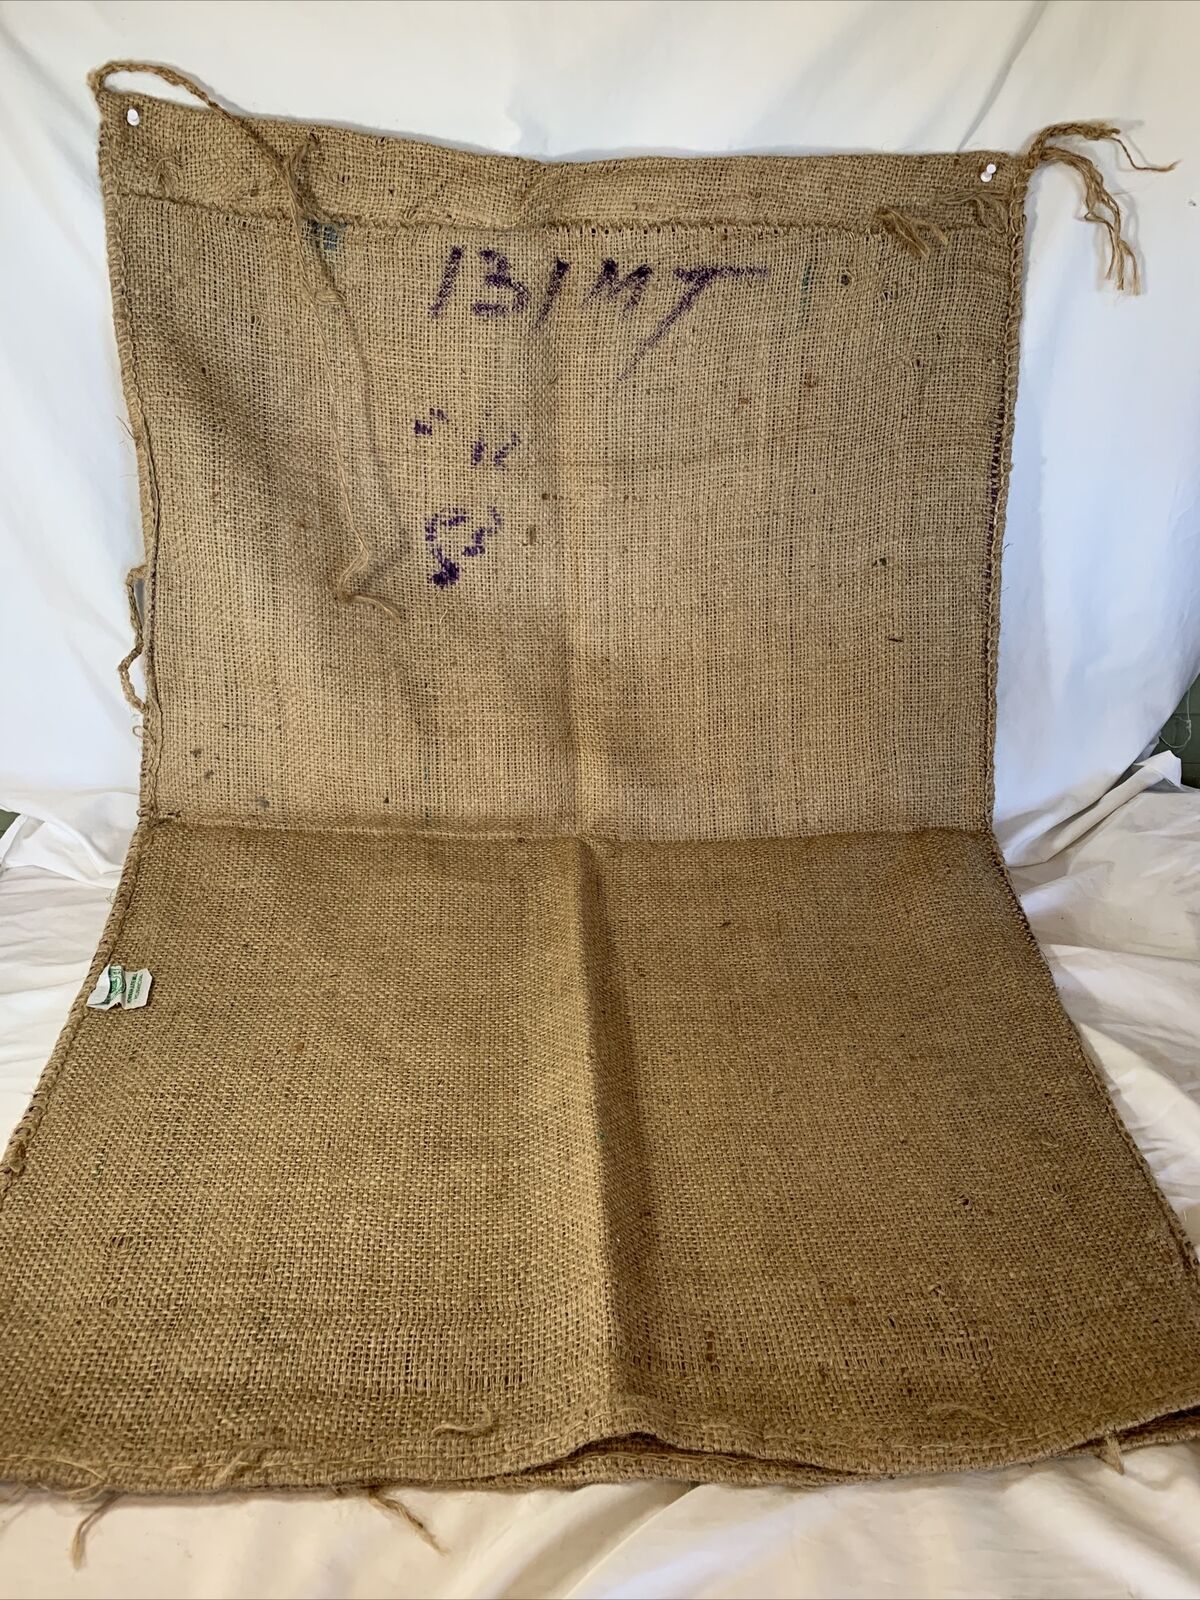 Vtg Burlap Bag Food Grade Jute Bag Made In India Howrah Jute Mill Sack 42x28